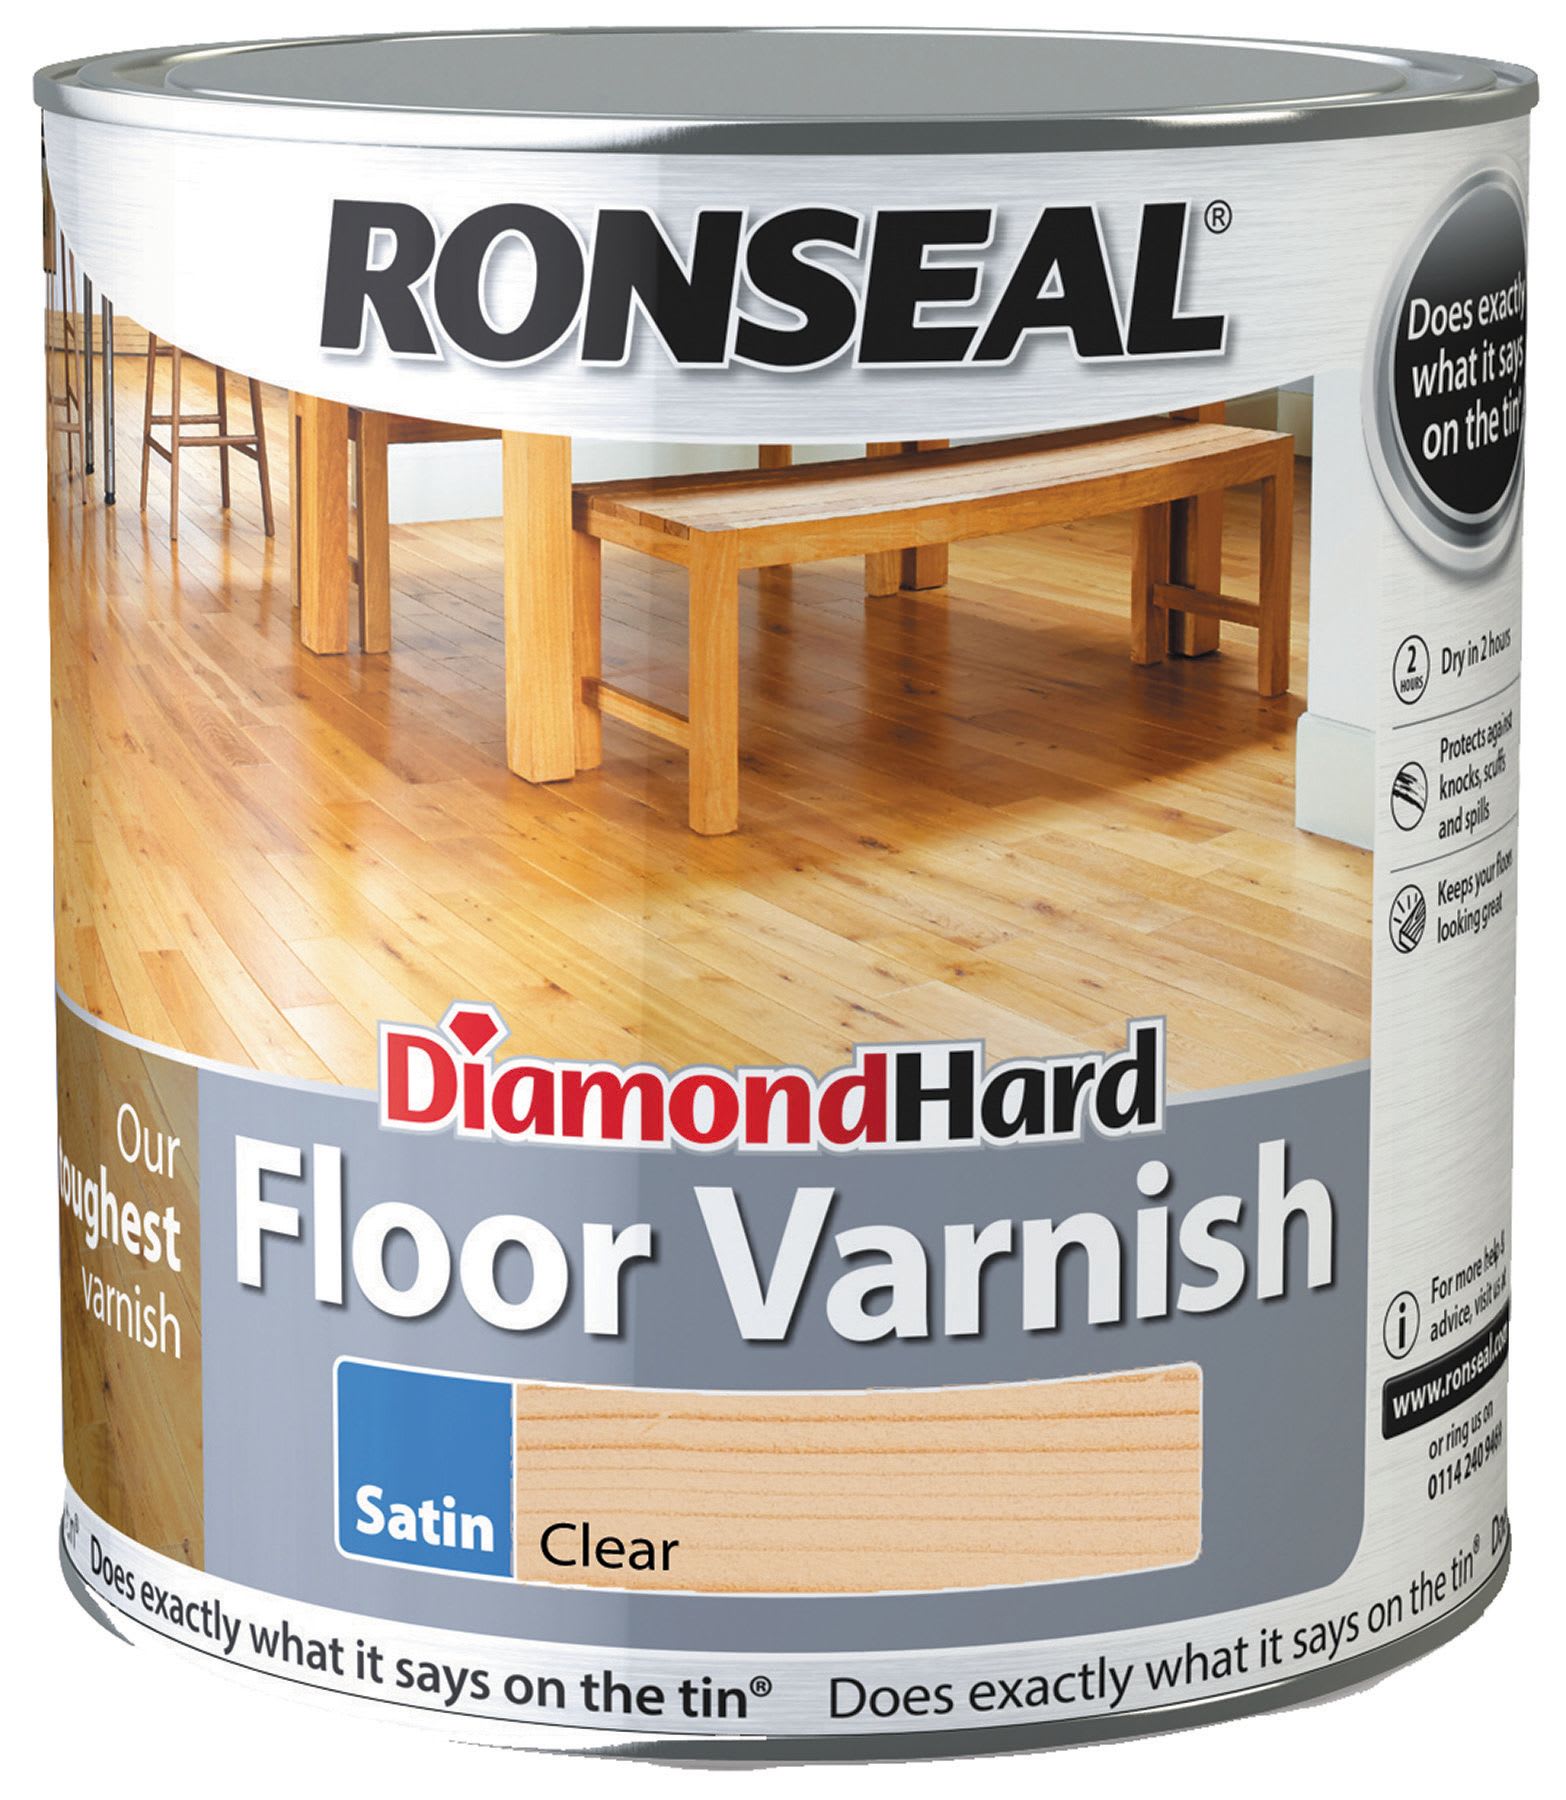 Ronseal Diamond Hard Floor Varnish - Clear Satin